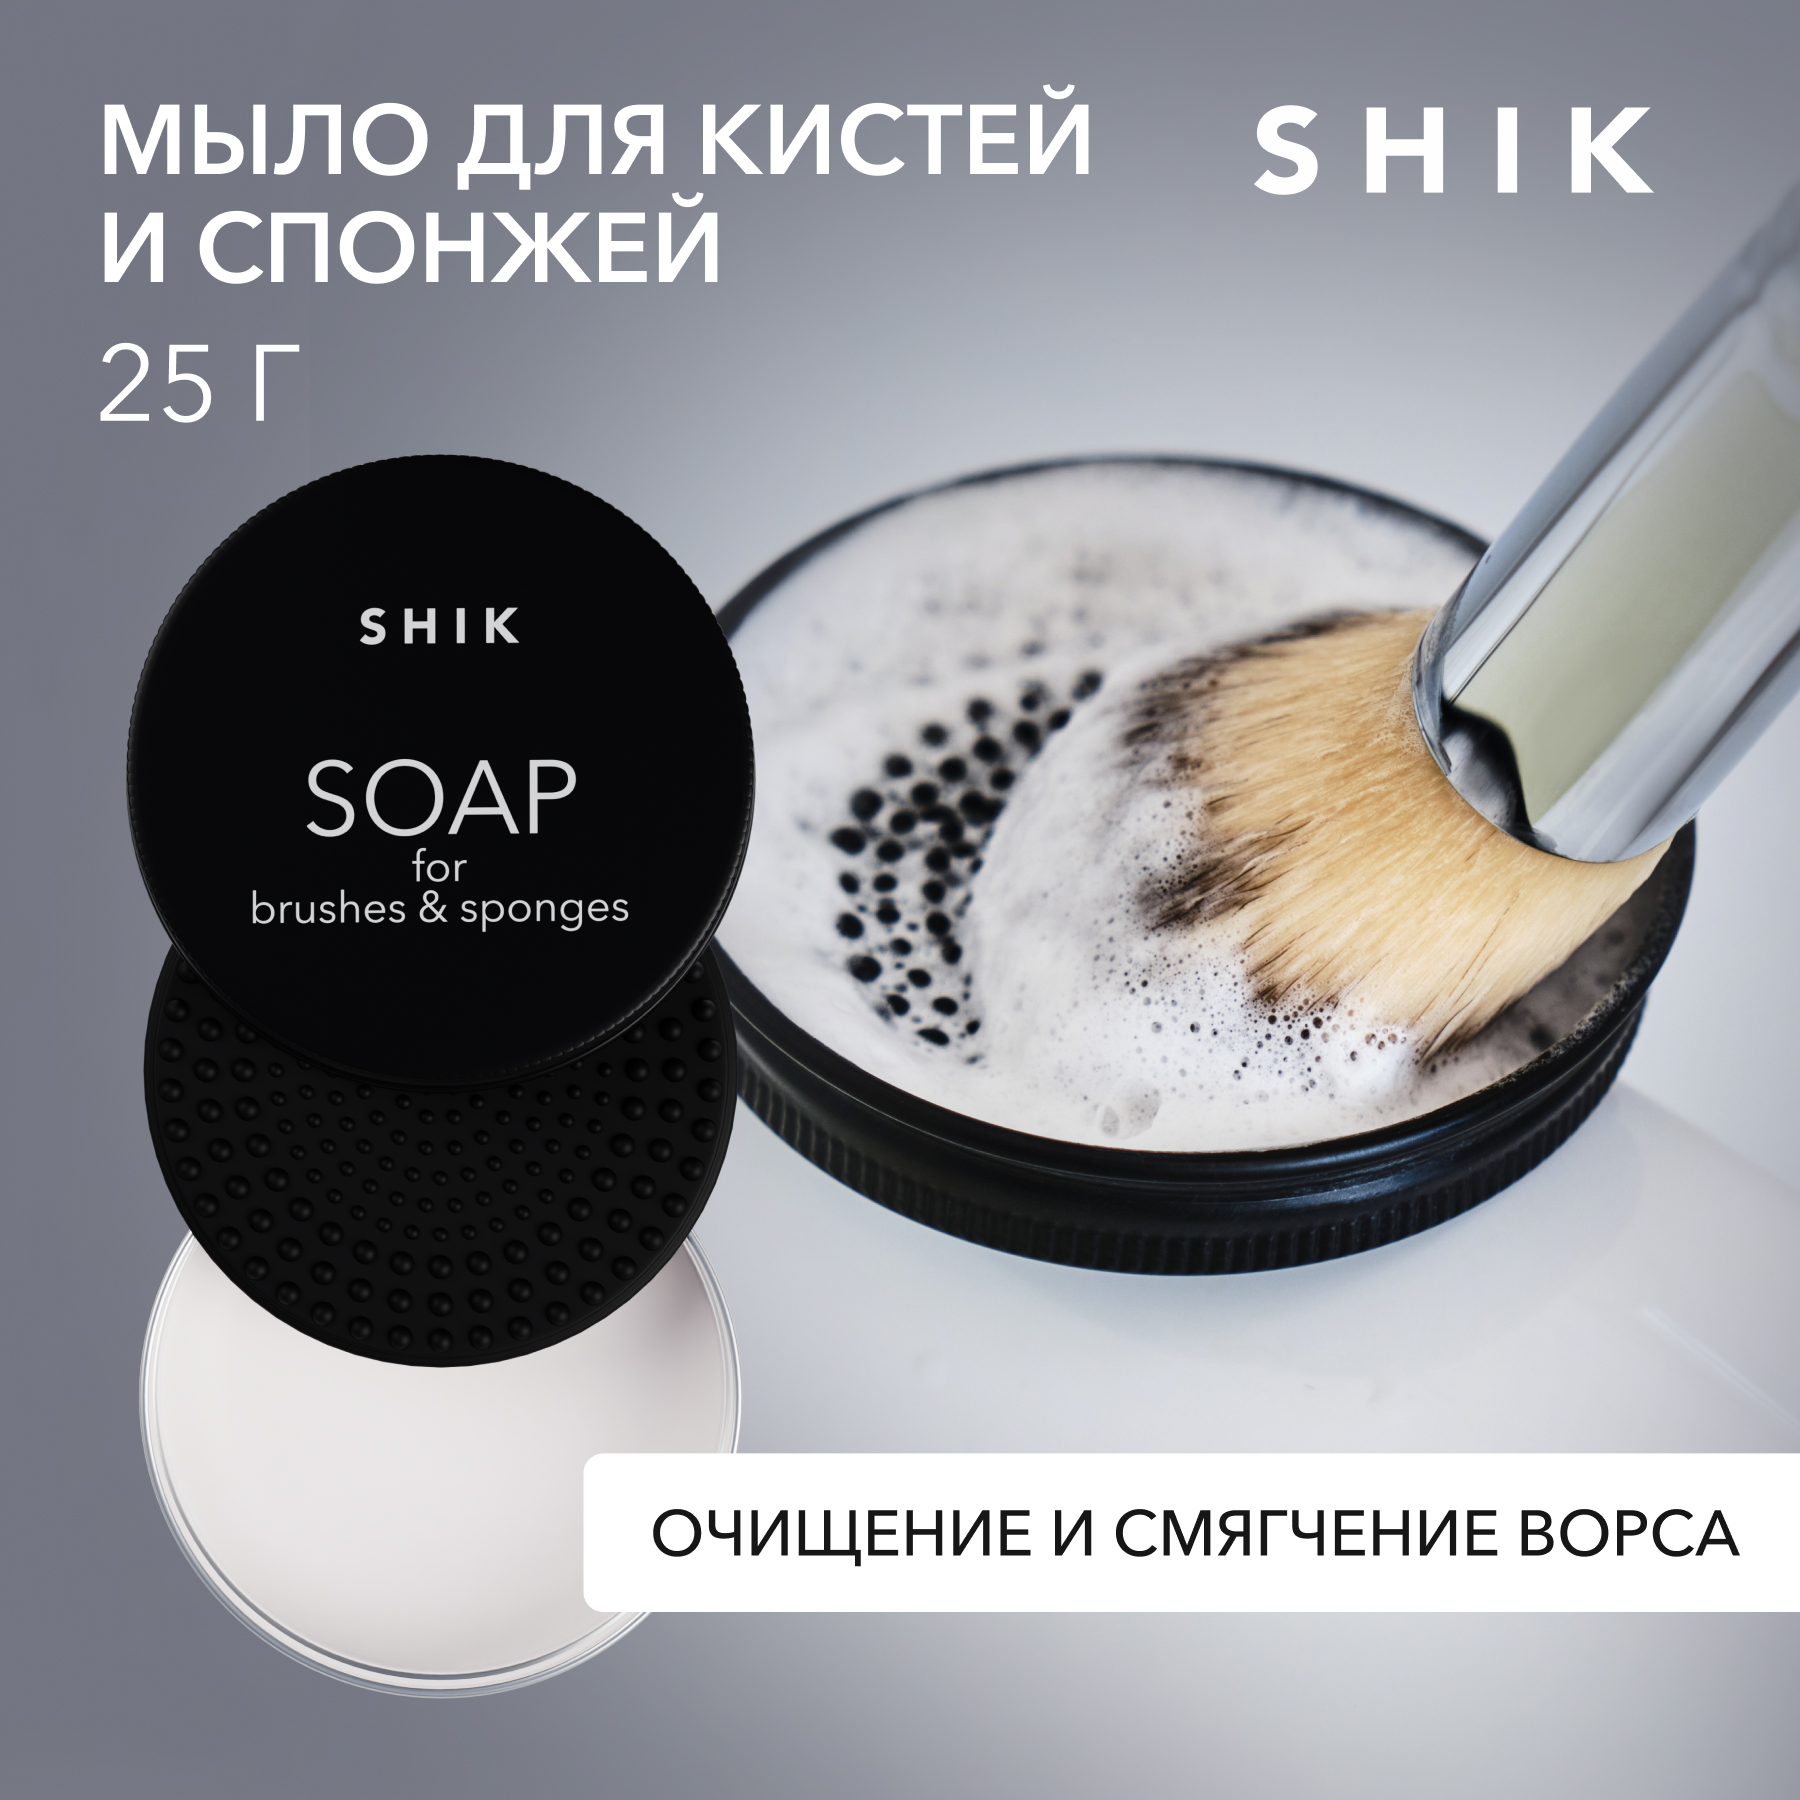 Мыло для очищения кистей и спонжей с ковриком-щеткой 25г SHIK soap for brushes & blenders